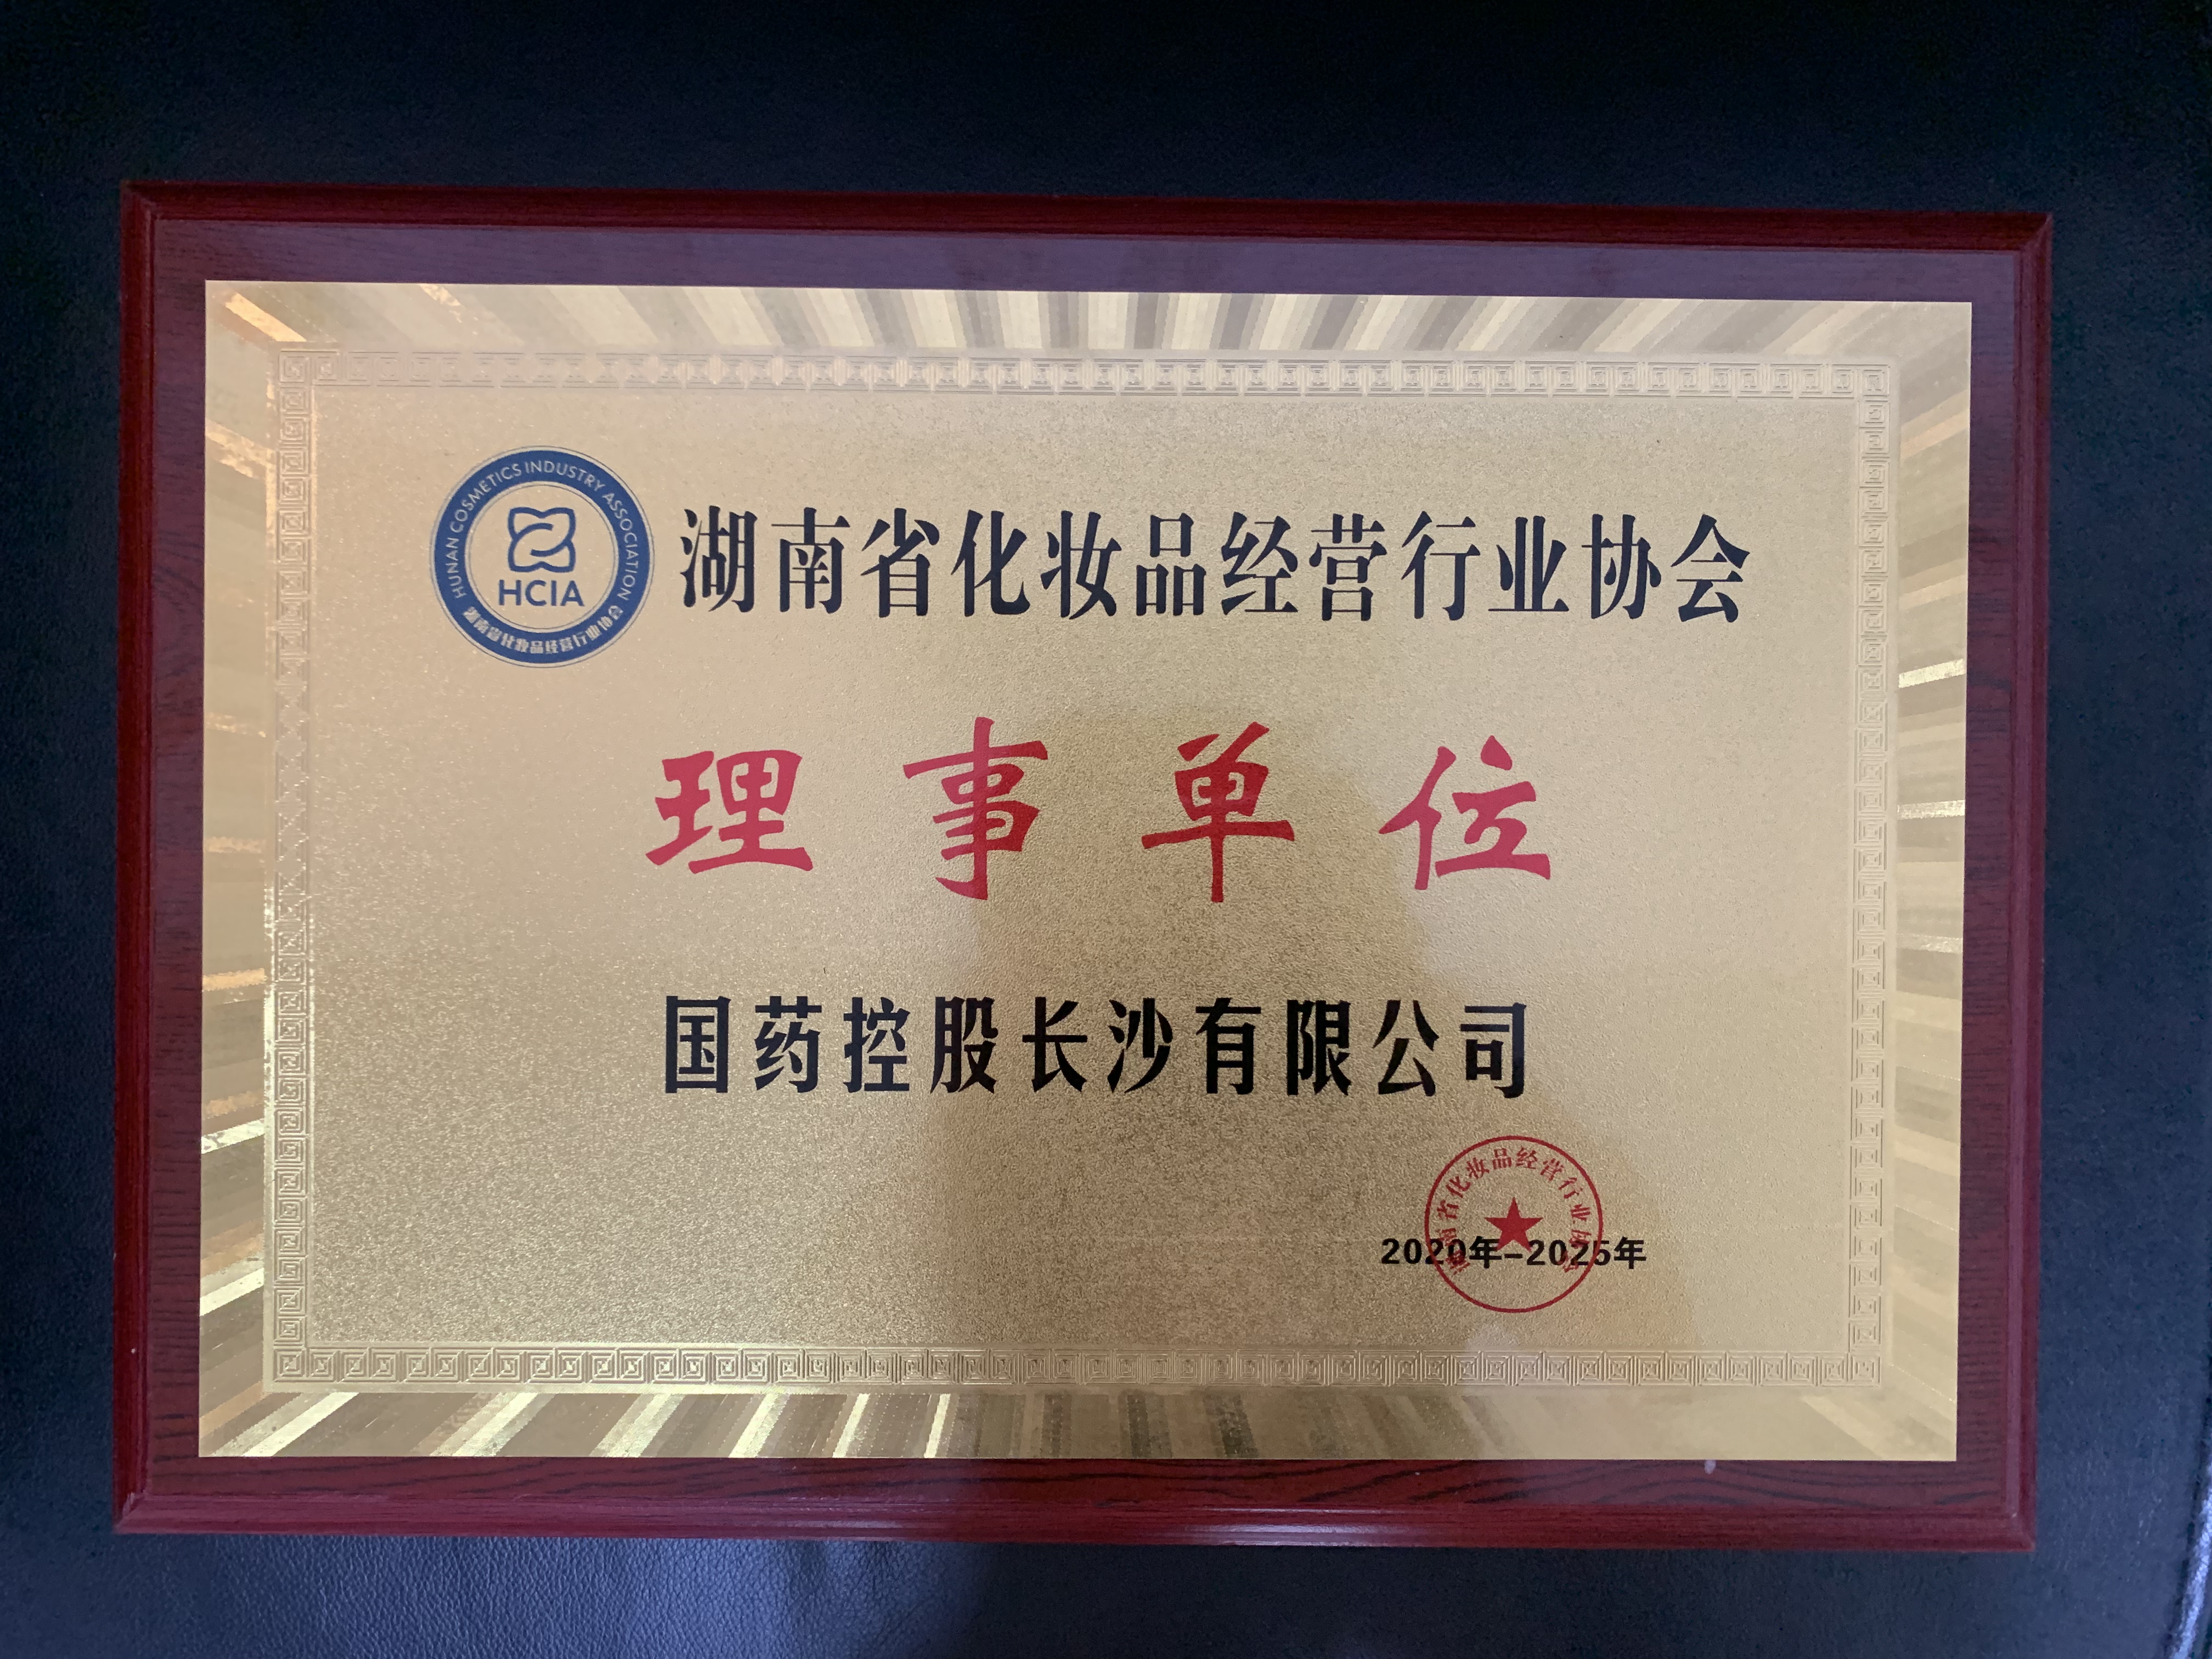 2020年-2025年湖南省化妝品經營行業協會理事單位